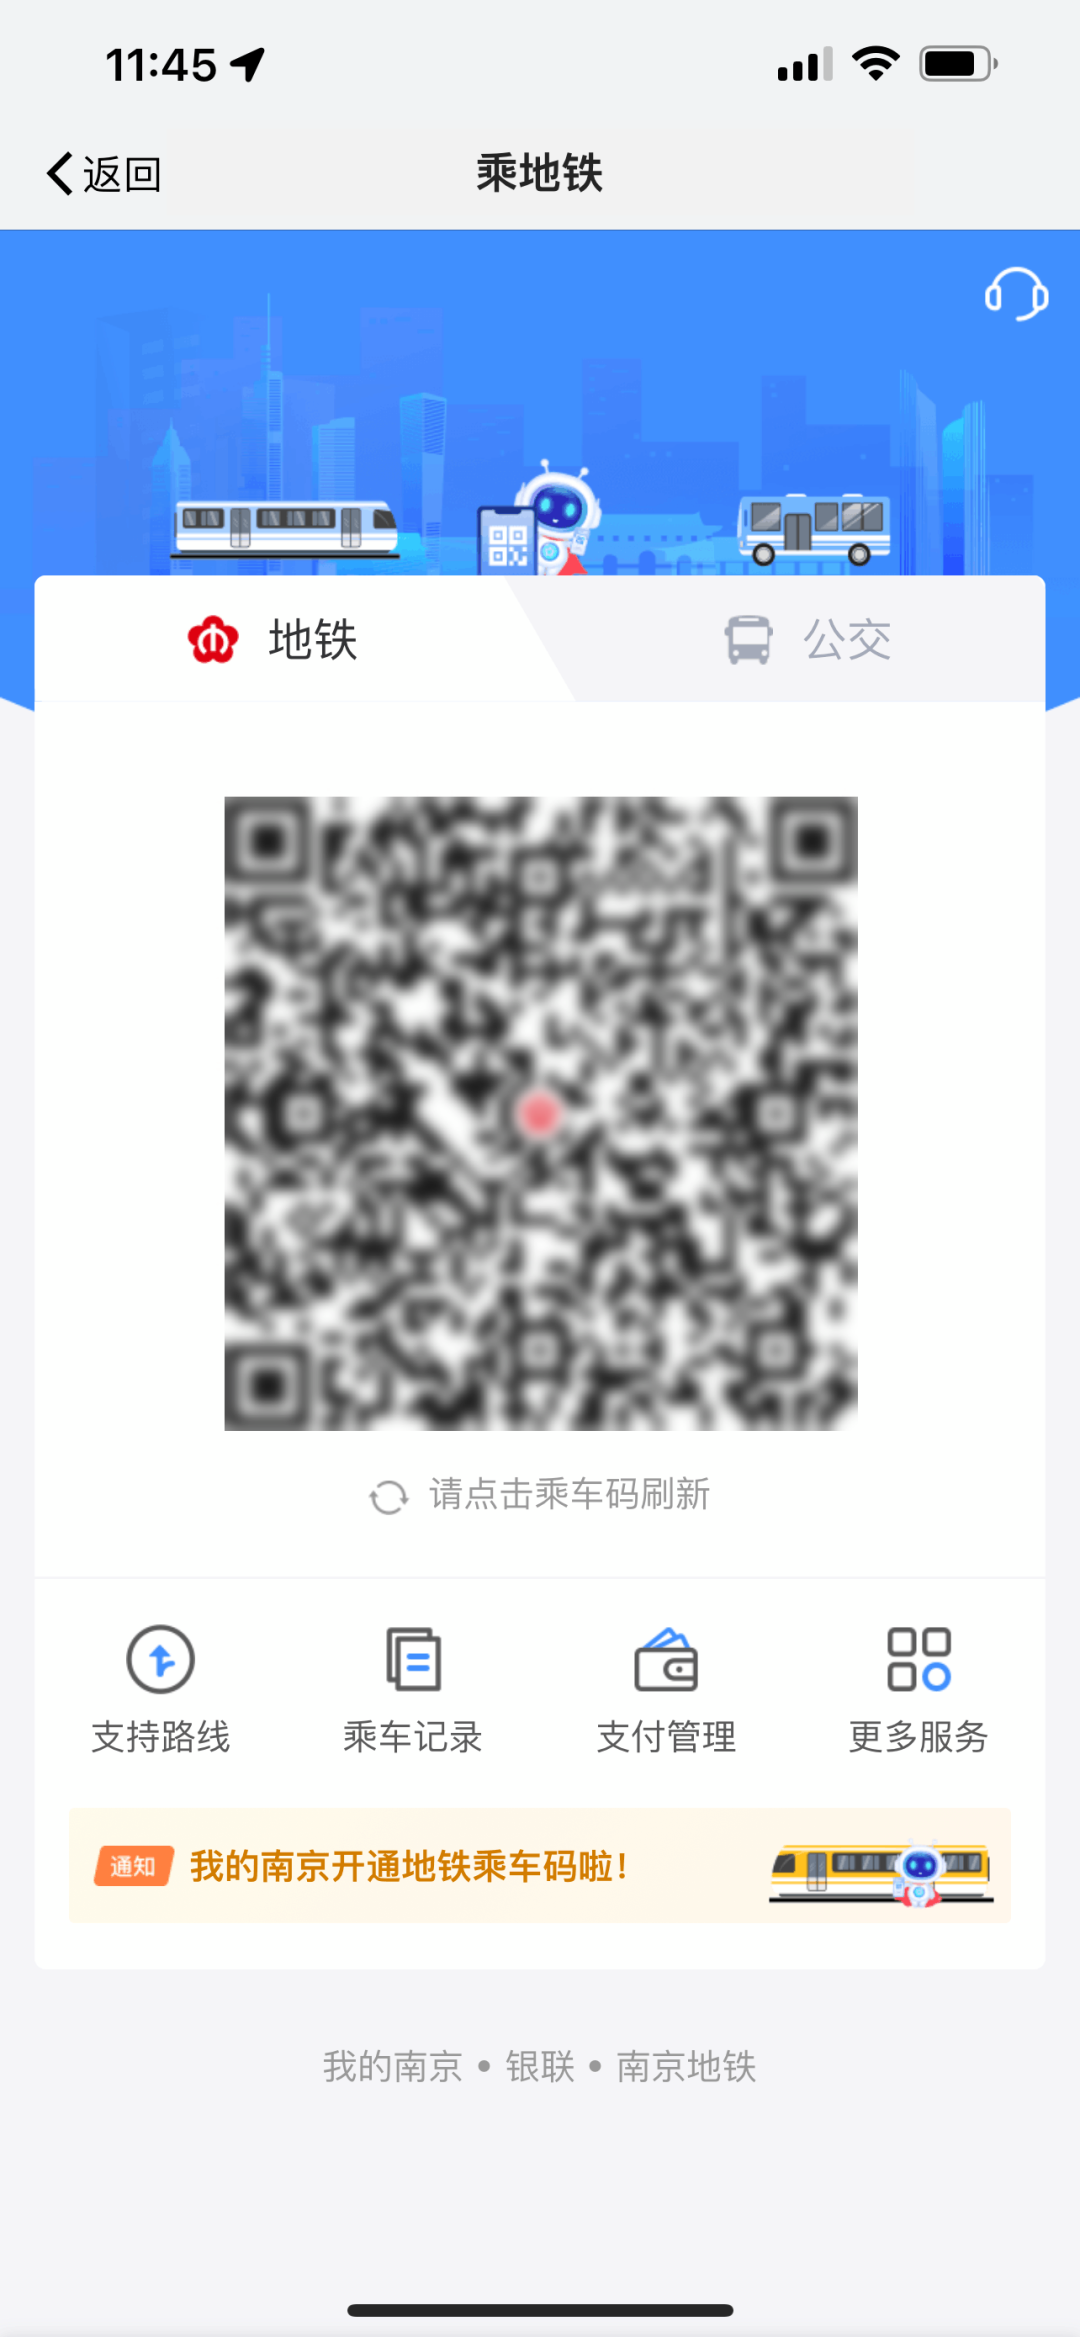 “我的南京”APP 正式上線地鐵乘車碼功能截圖